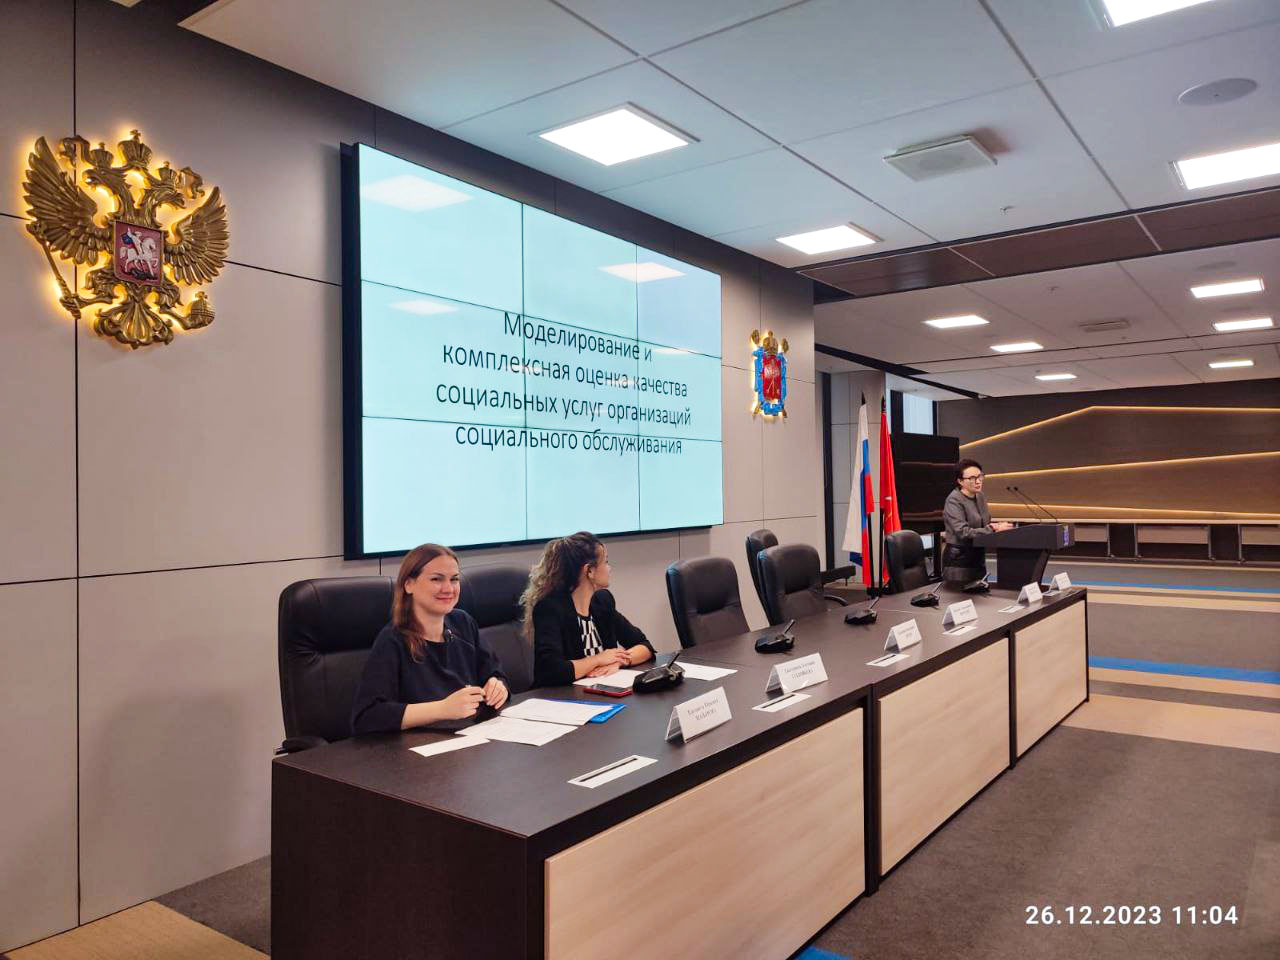 В АДК "Невская Ратуша" состоялся научный семинар Института, на котором были обсуждены направления развития учреждений социальной сферы